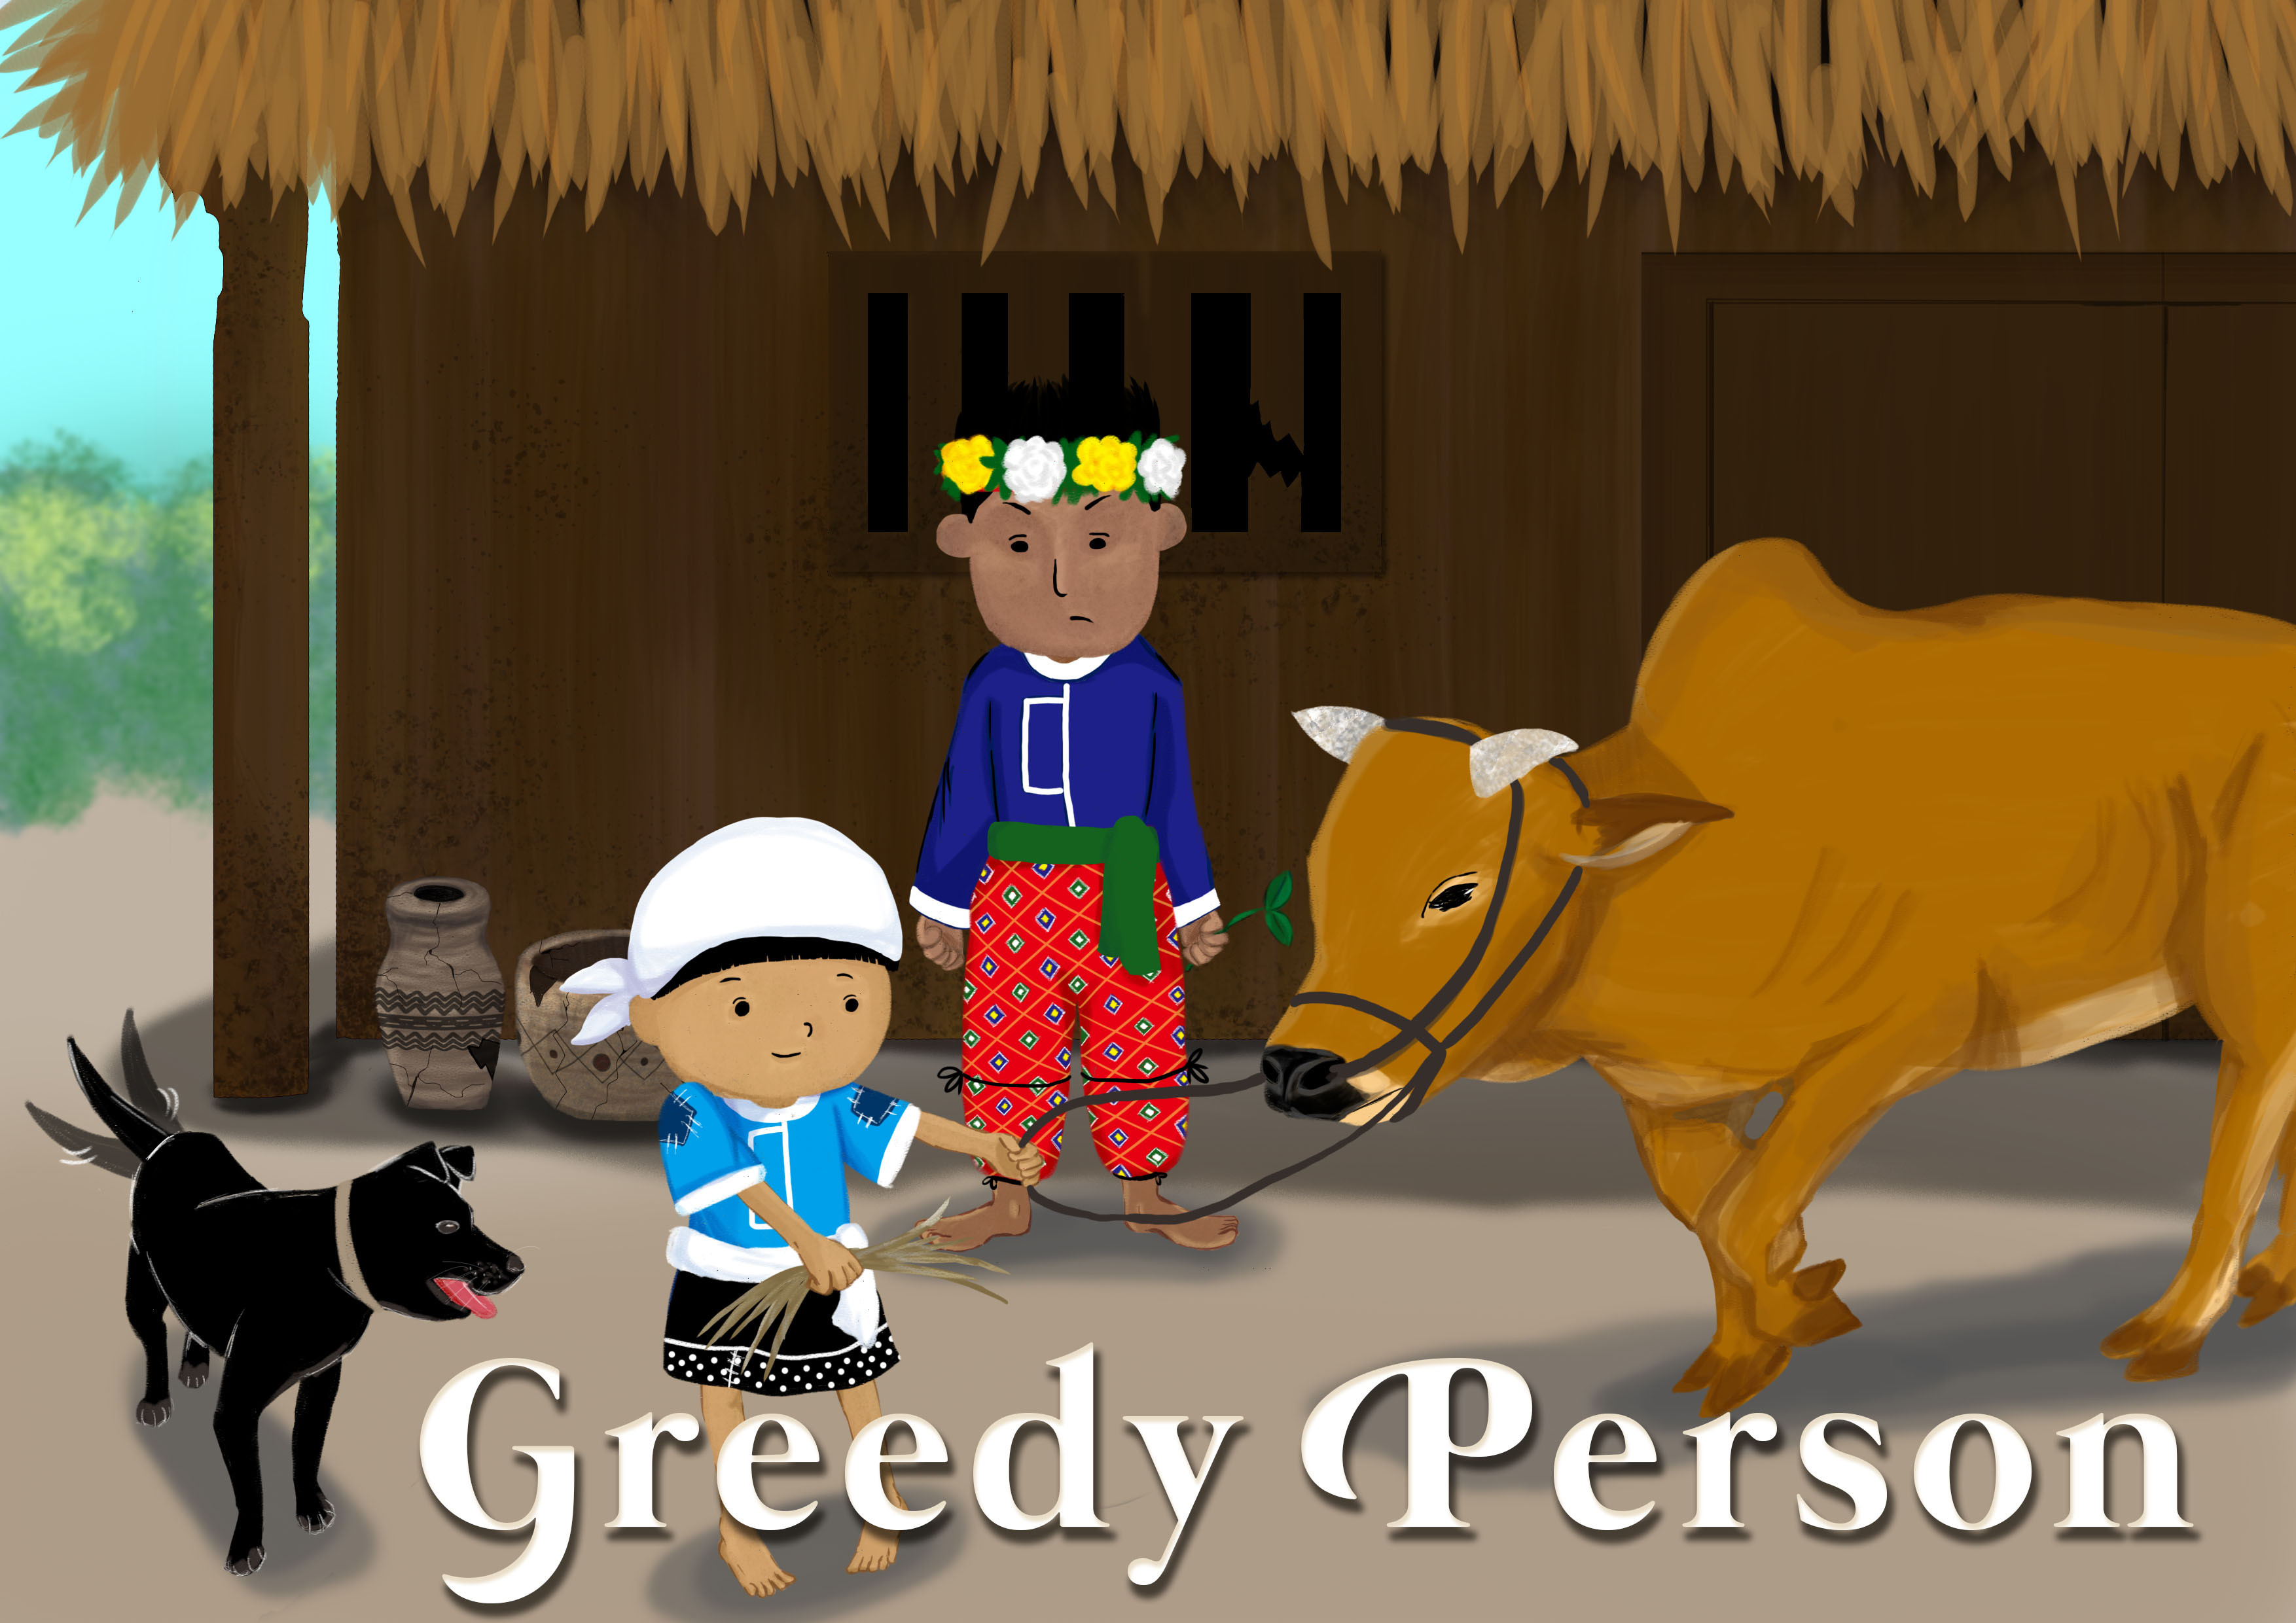 Greedy Person